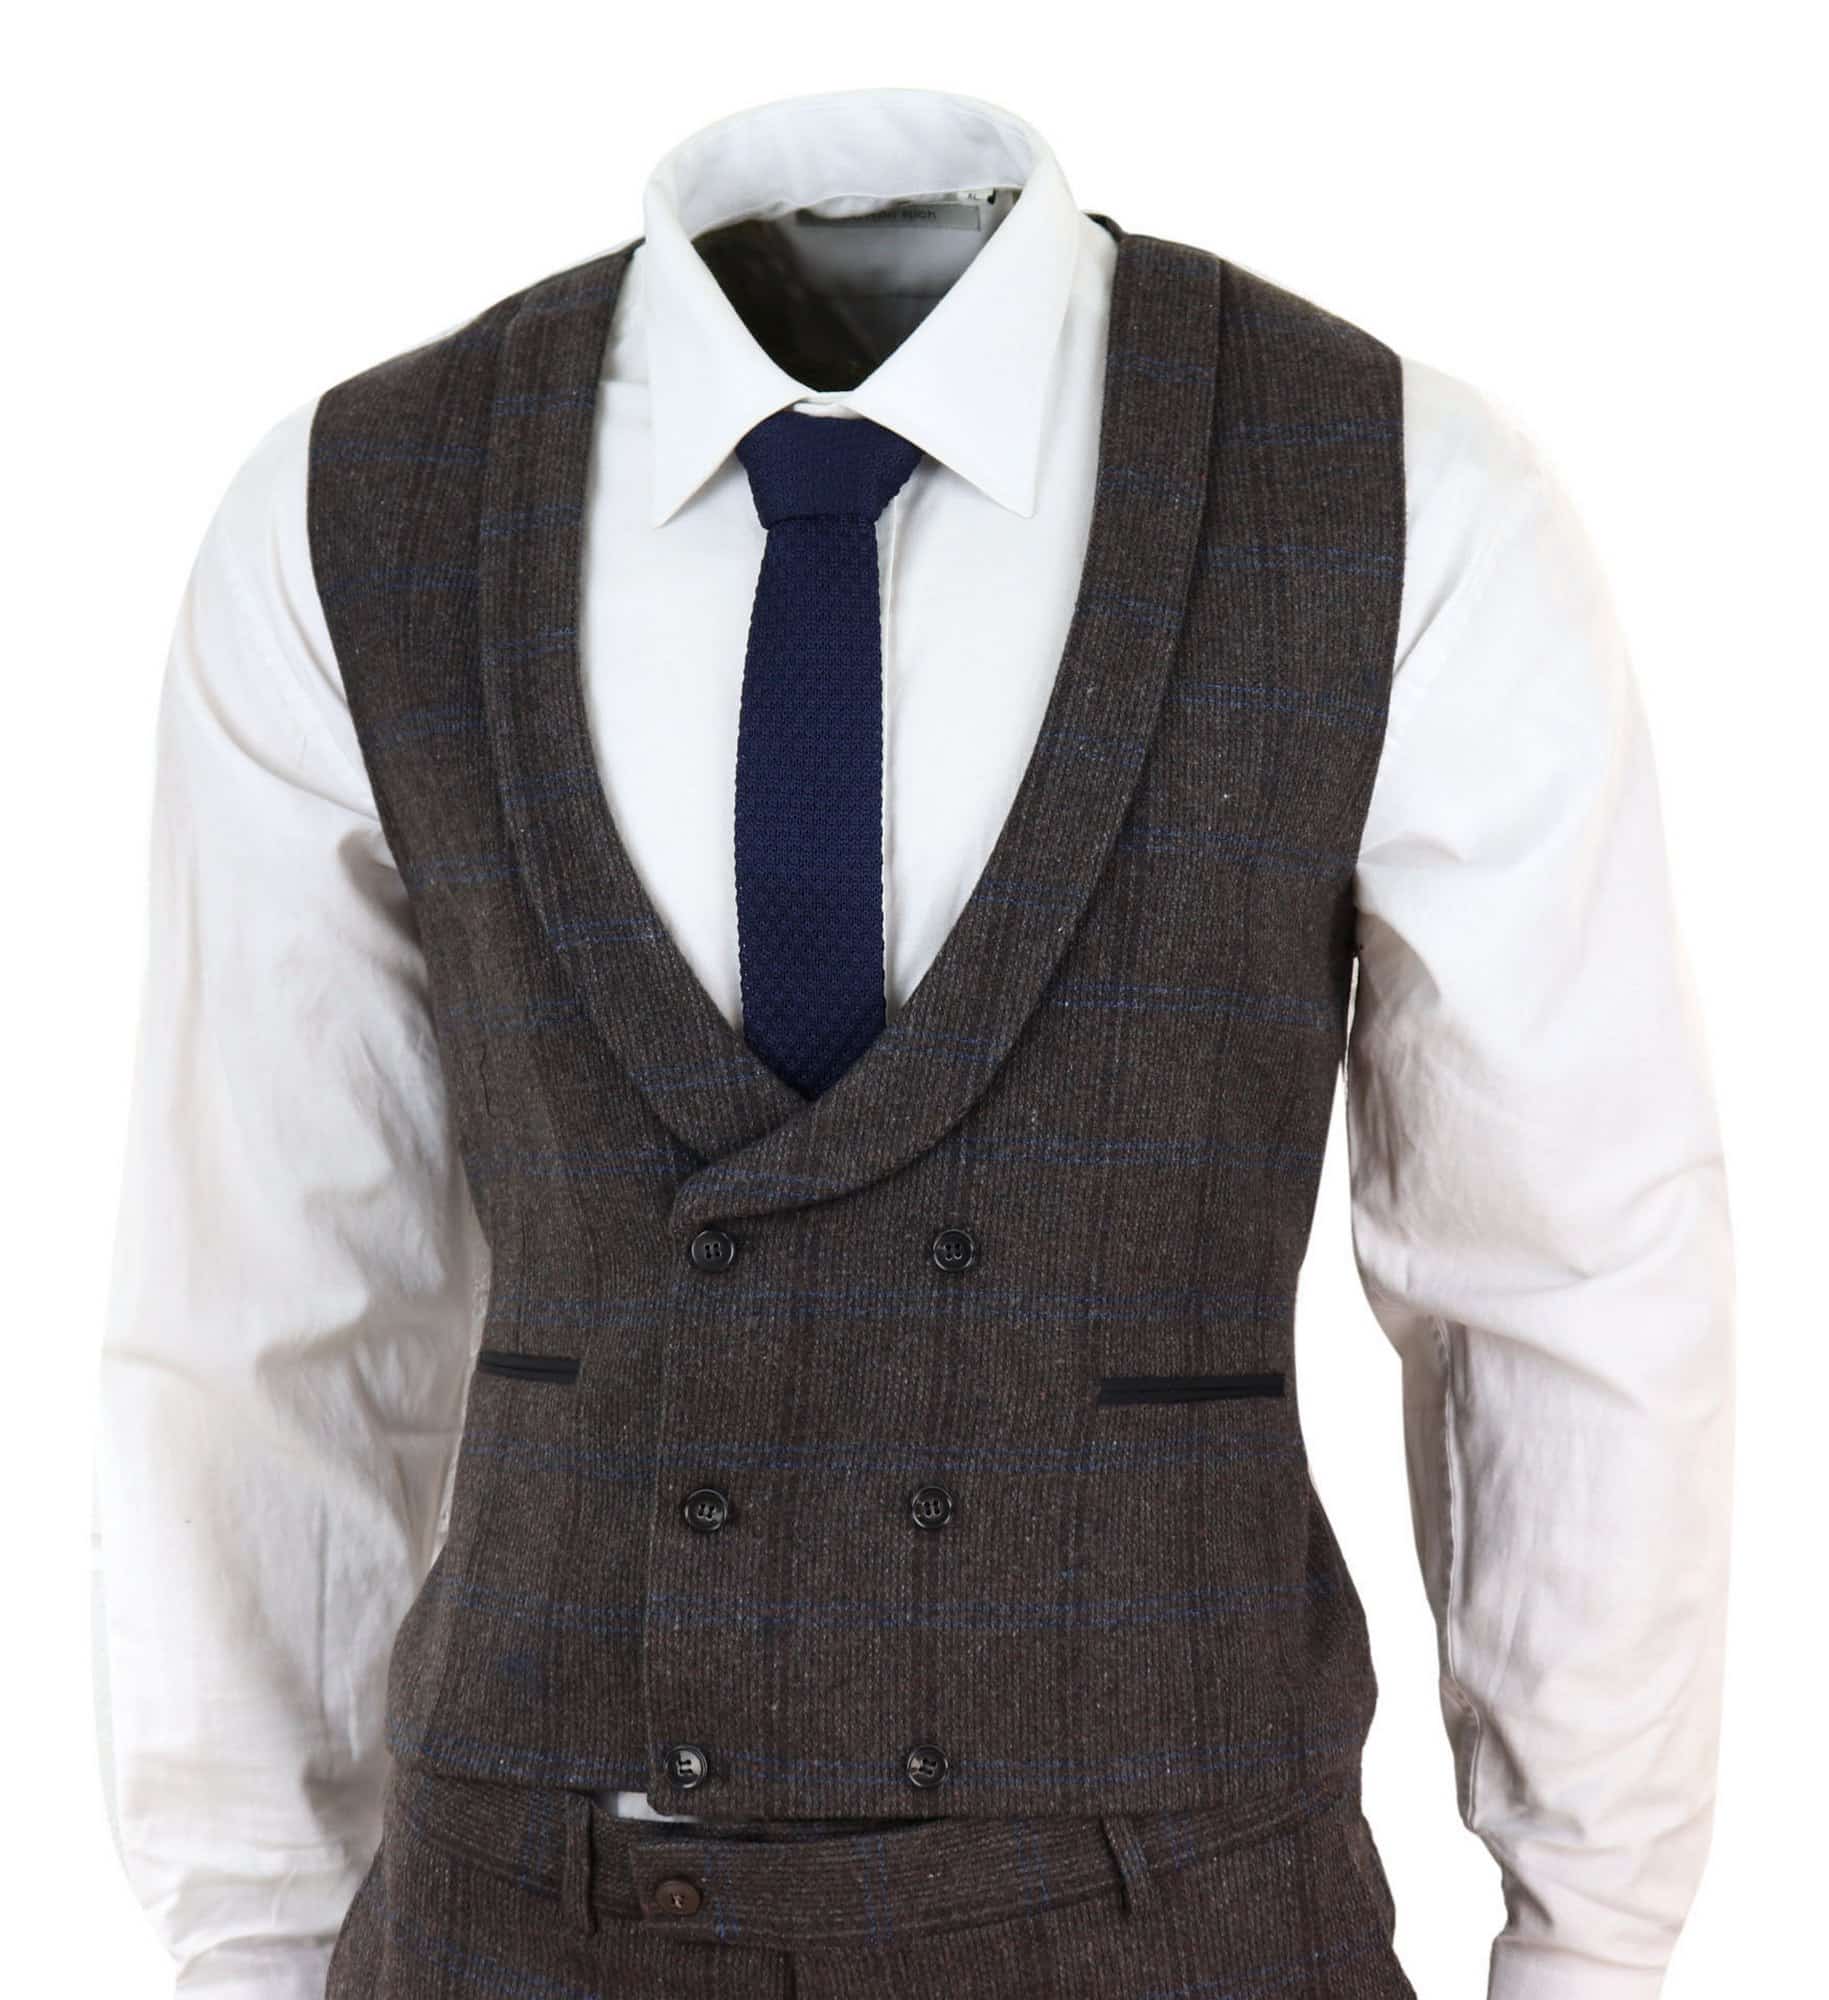 Brown Check 3 Piece Tweed Suit: Buy Online - Happy Gentleman